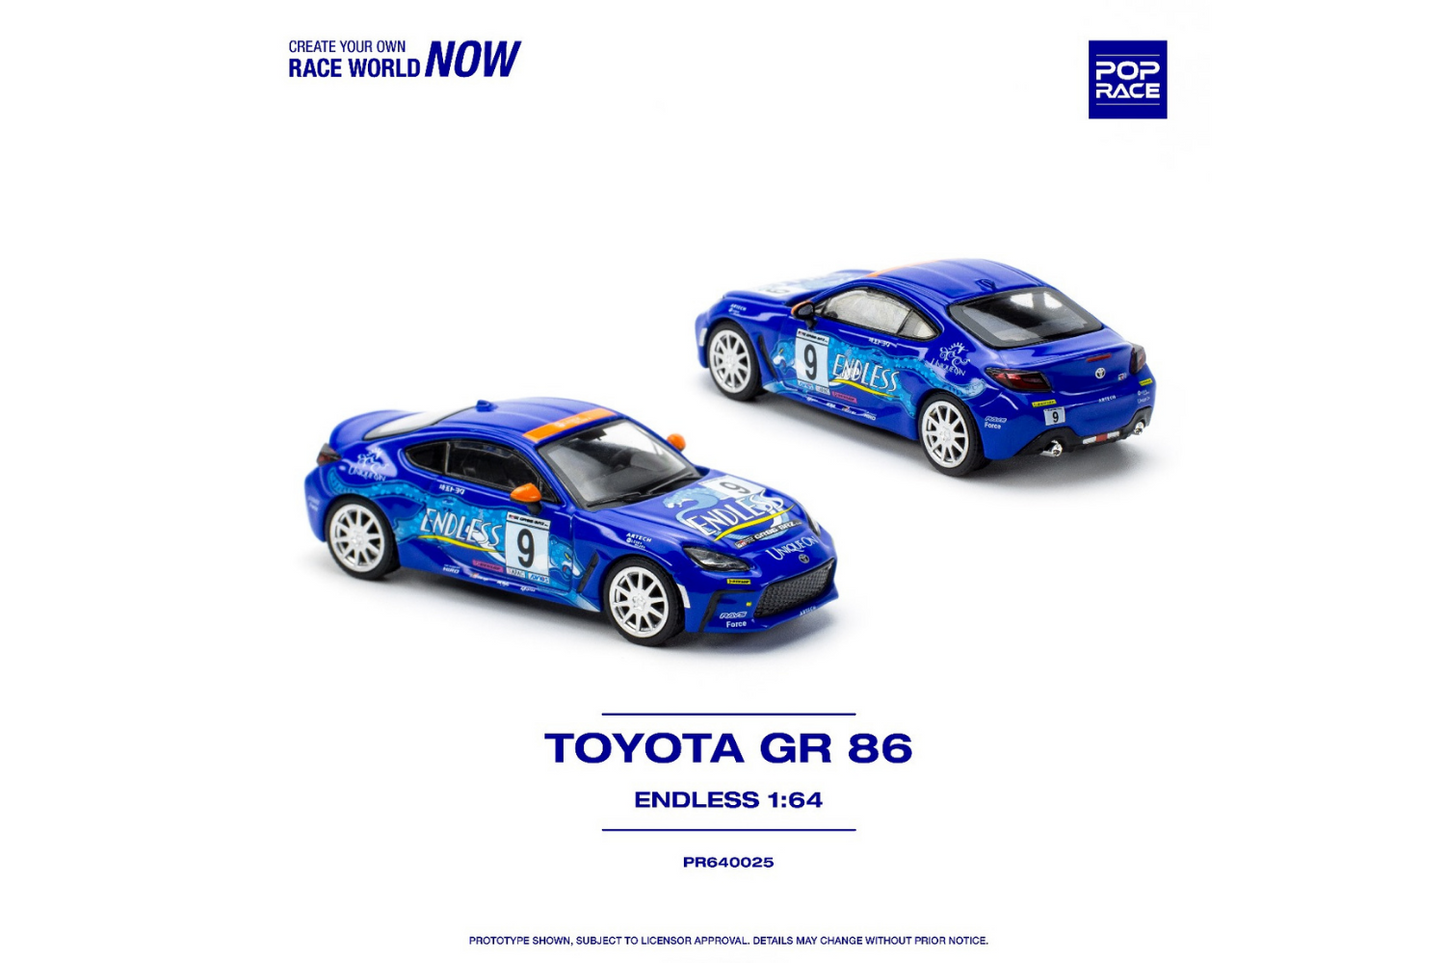 Pop Race 1/64 Toyota GR86 #9 "Endless" in Dark Blue